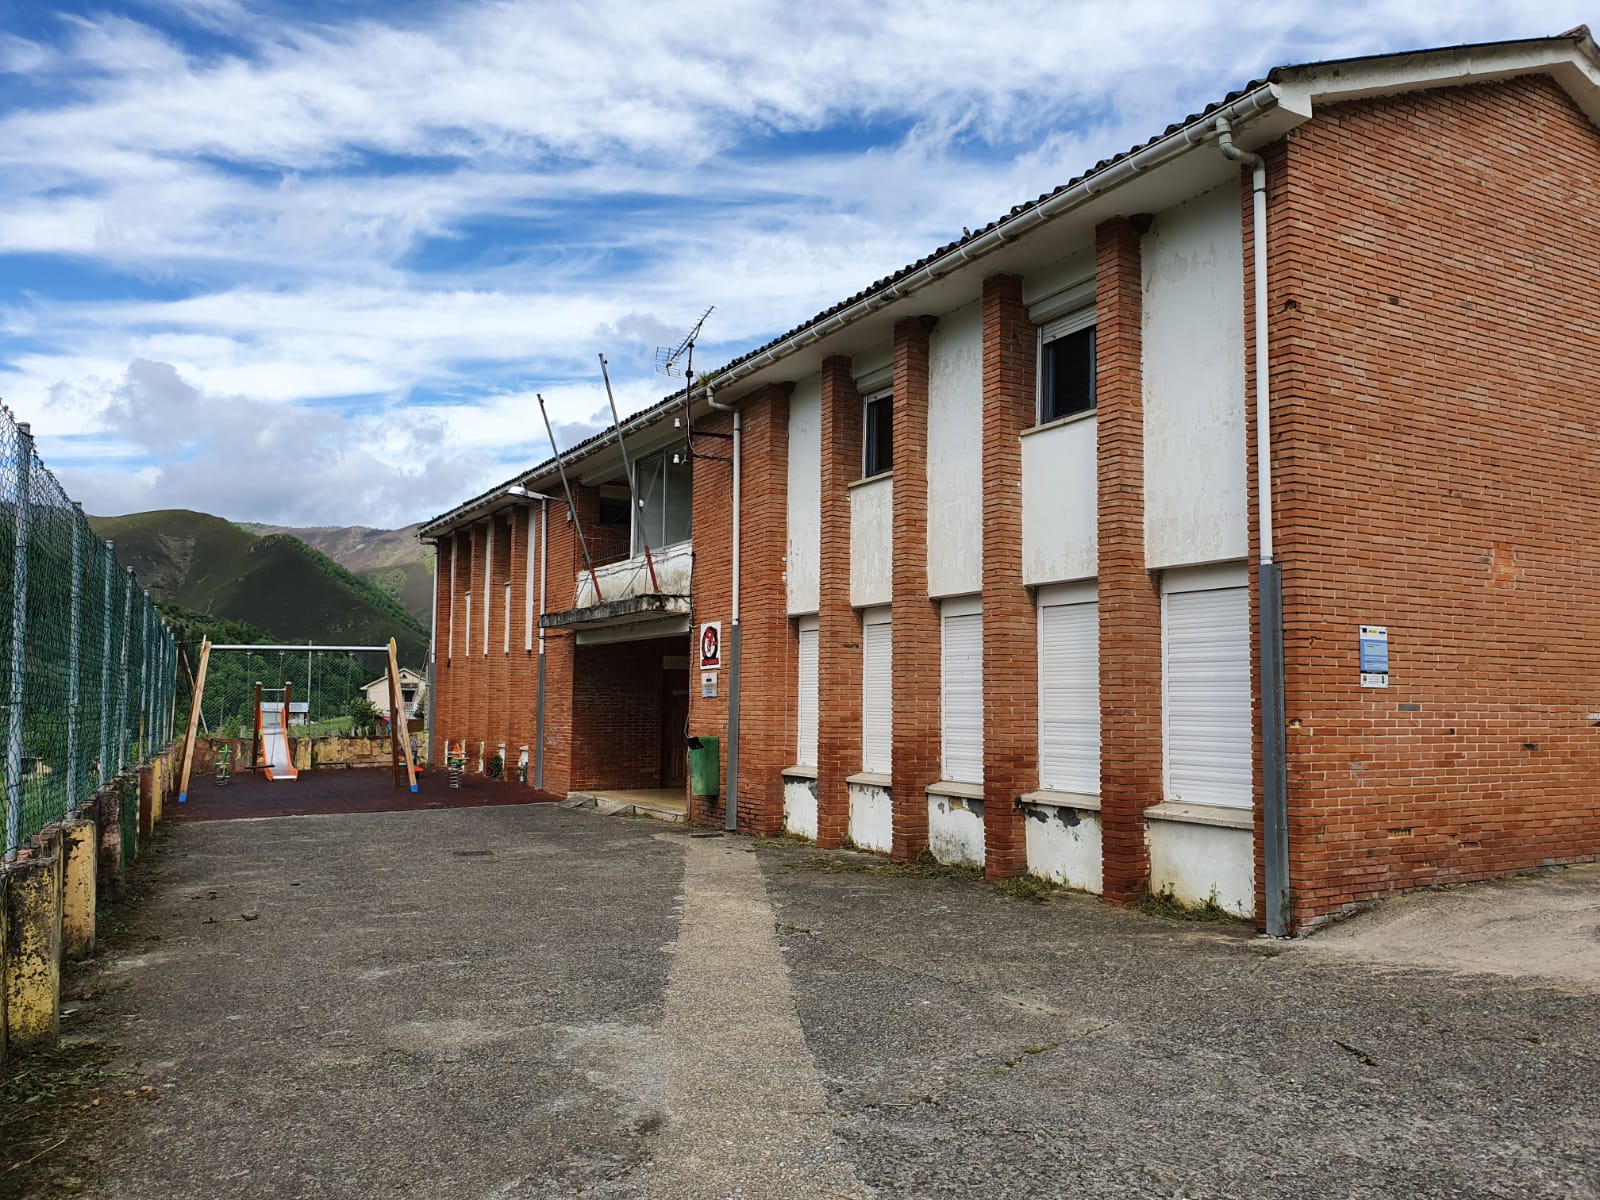 Educación desafecta 22 escuelas rurales en Cangas del Narcea para dar a los edificios un uso vecinal